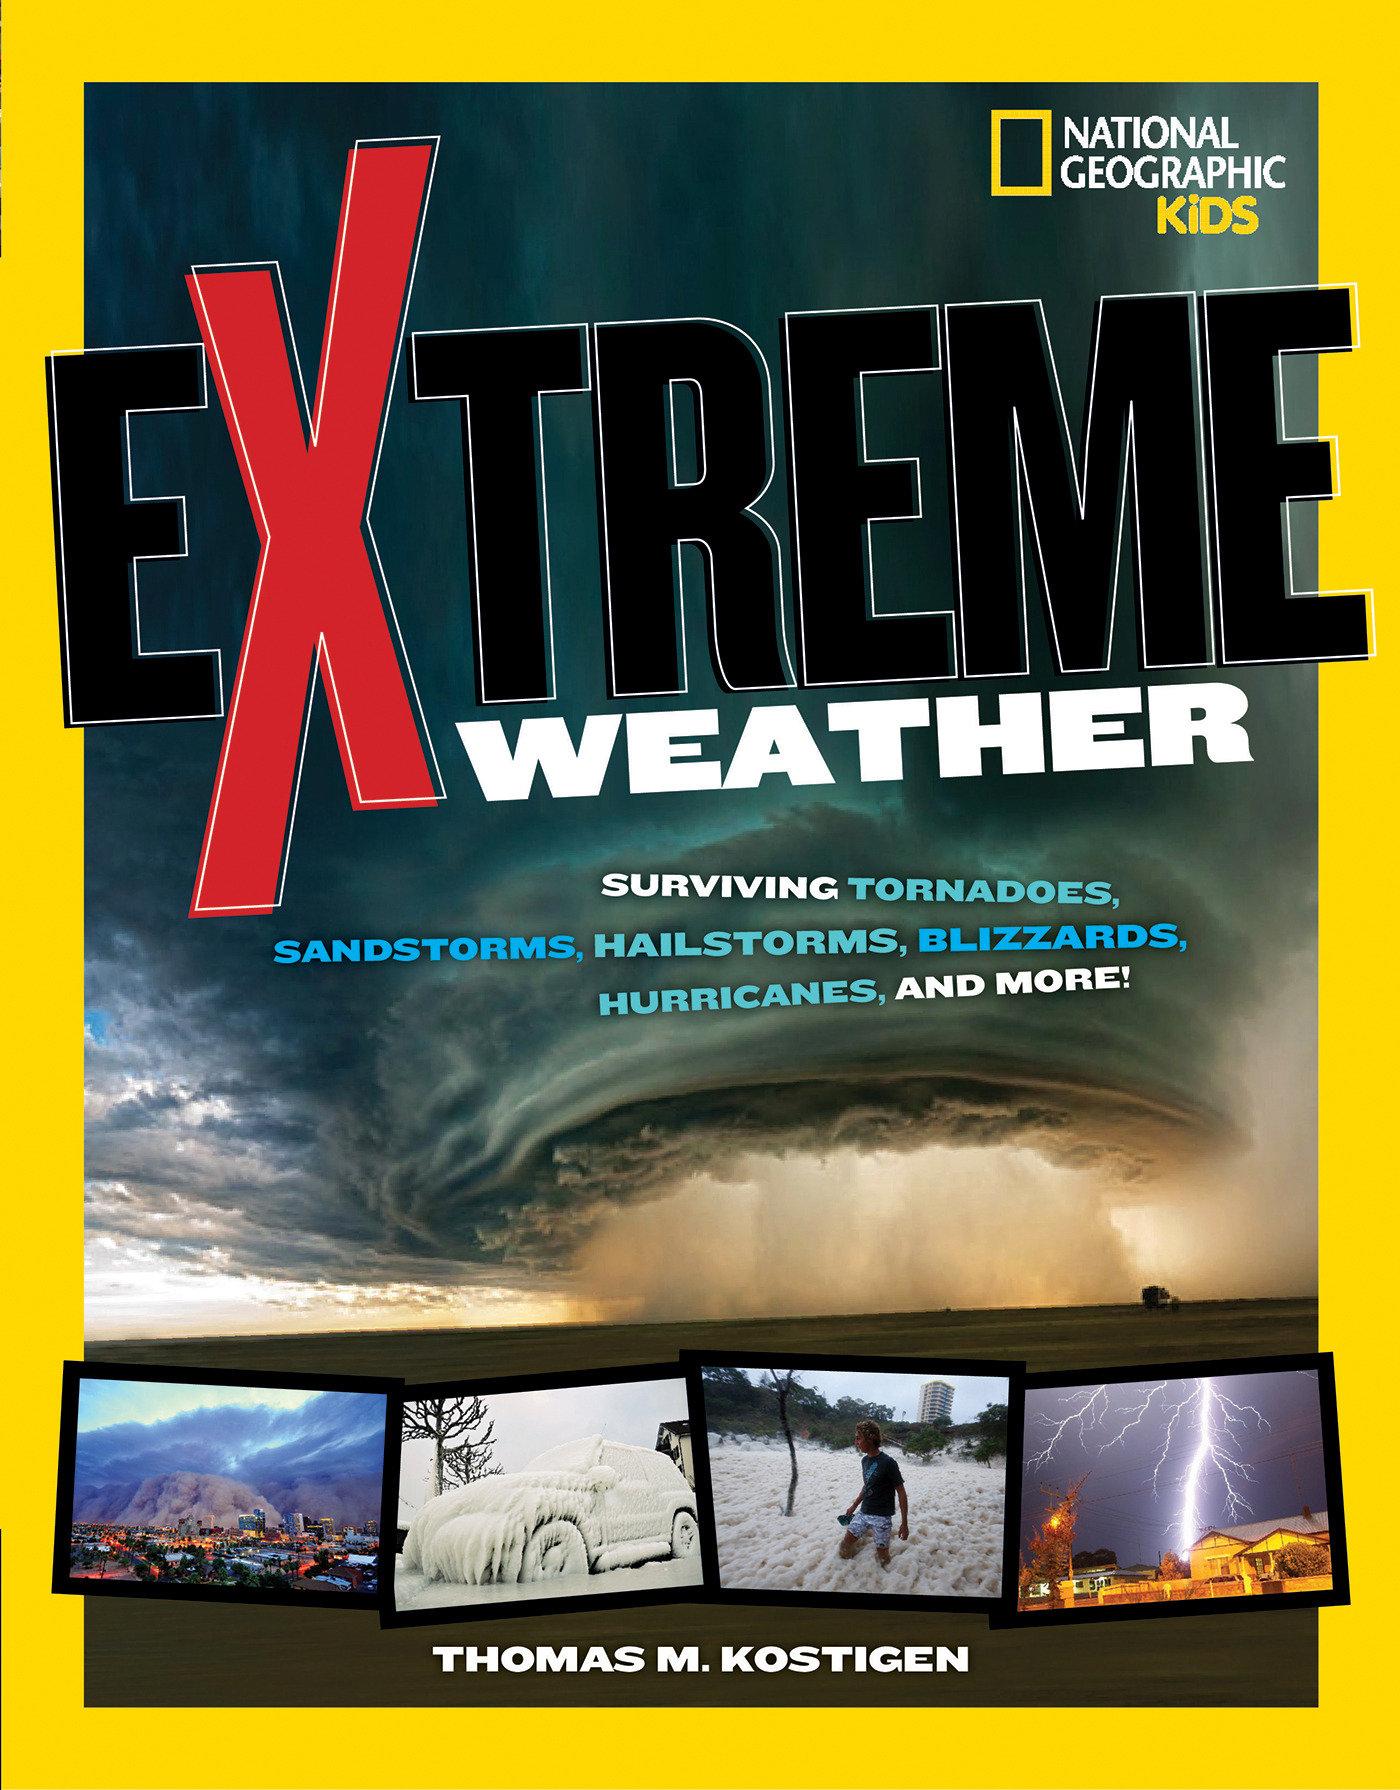 Extreme Weather: Surviving Tornadoes, Sandstorms, Hailstorms, Blizzards, Hurricanes, and More! / Thomas M. Kostigen / Taschenbuch / National Geographic Kids / Kartoniert / Broschiert / Englisch / 2014 - Kostigen, Thomas M.